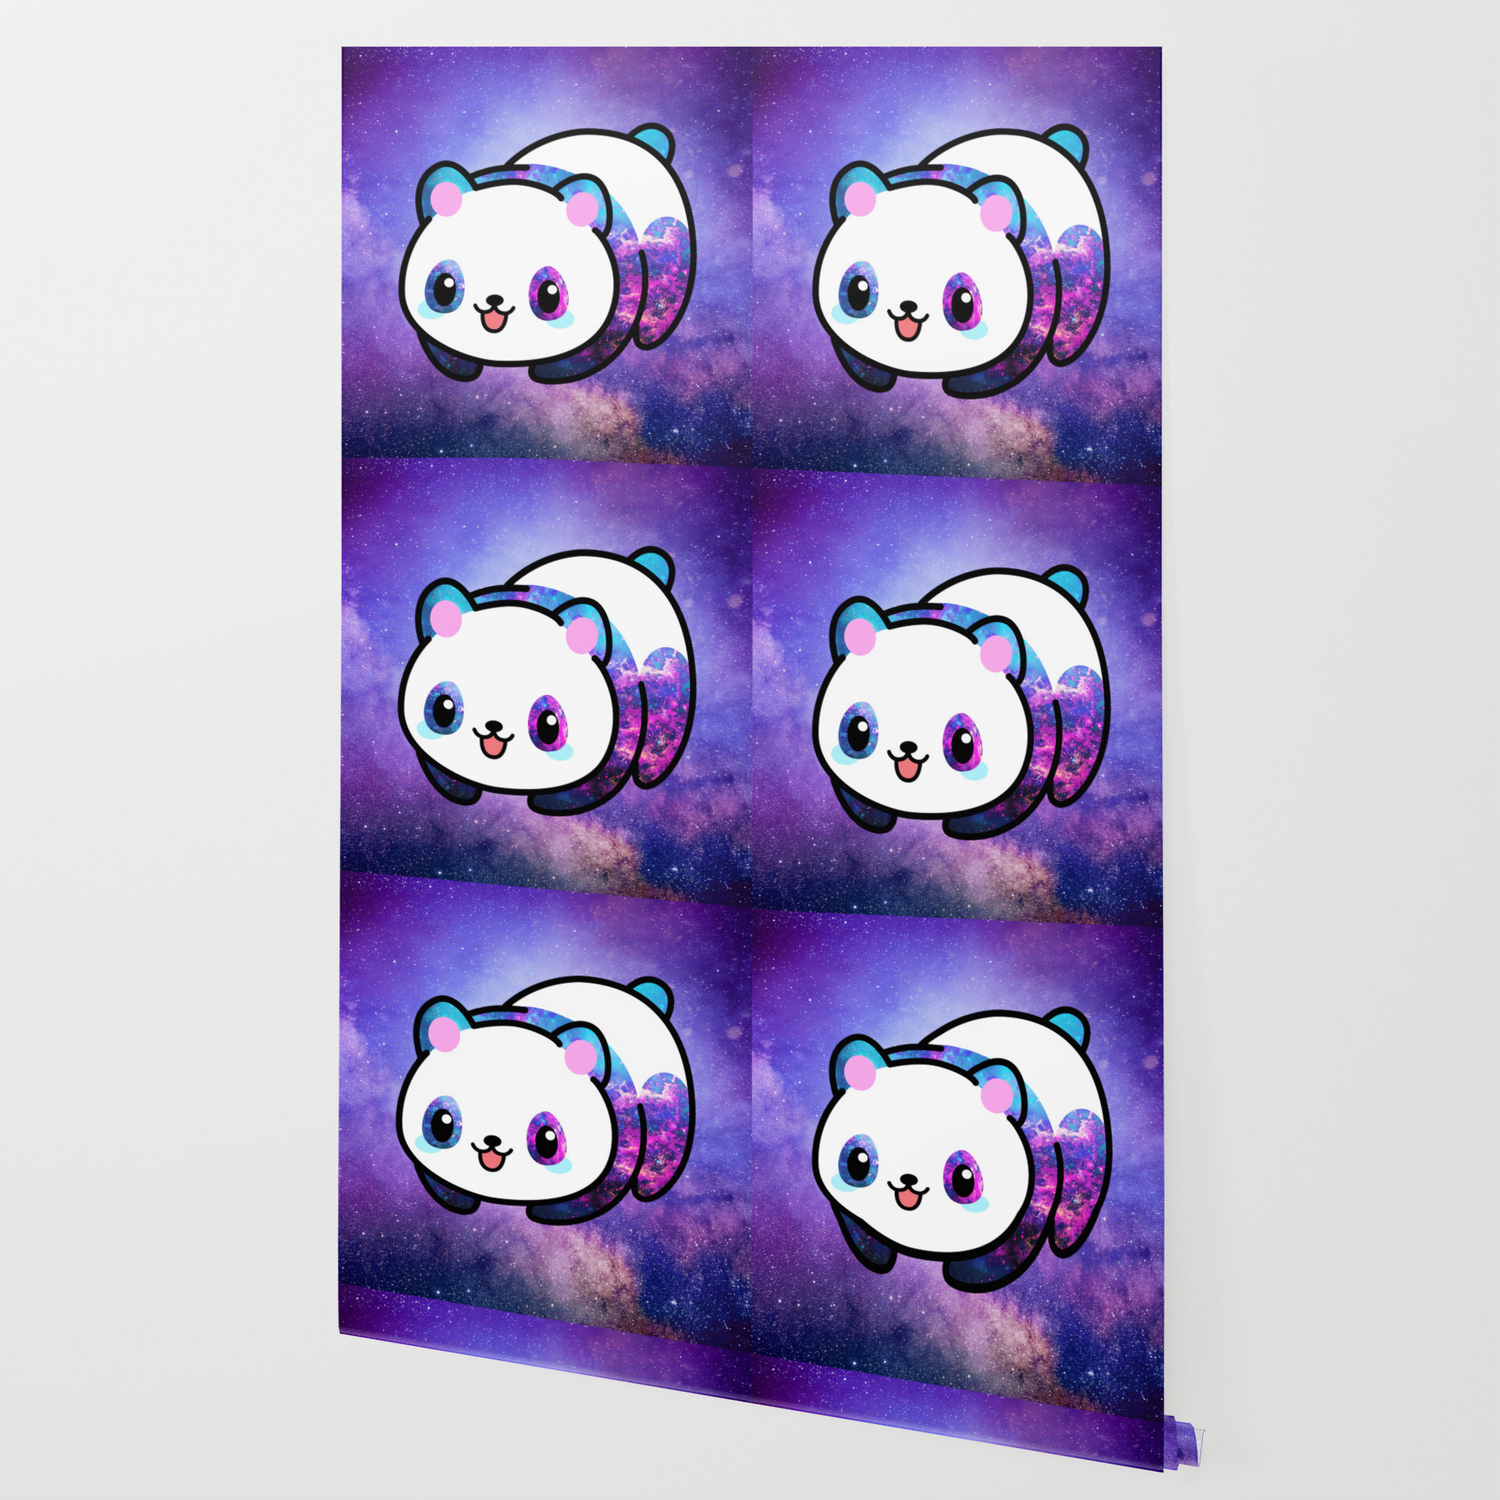 Cute Kawaii Panda Wallpapers